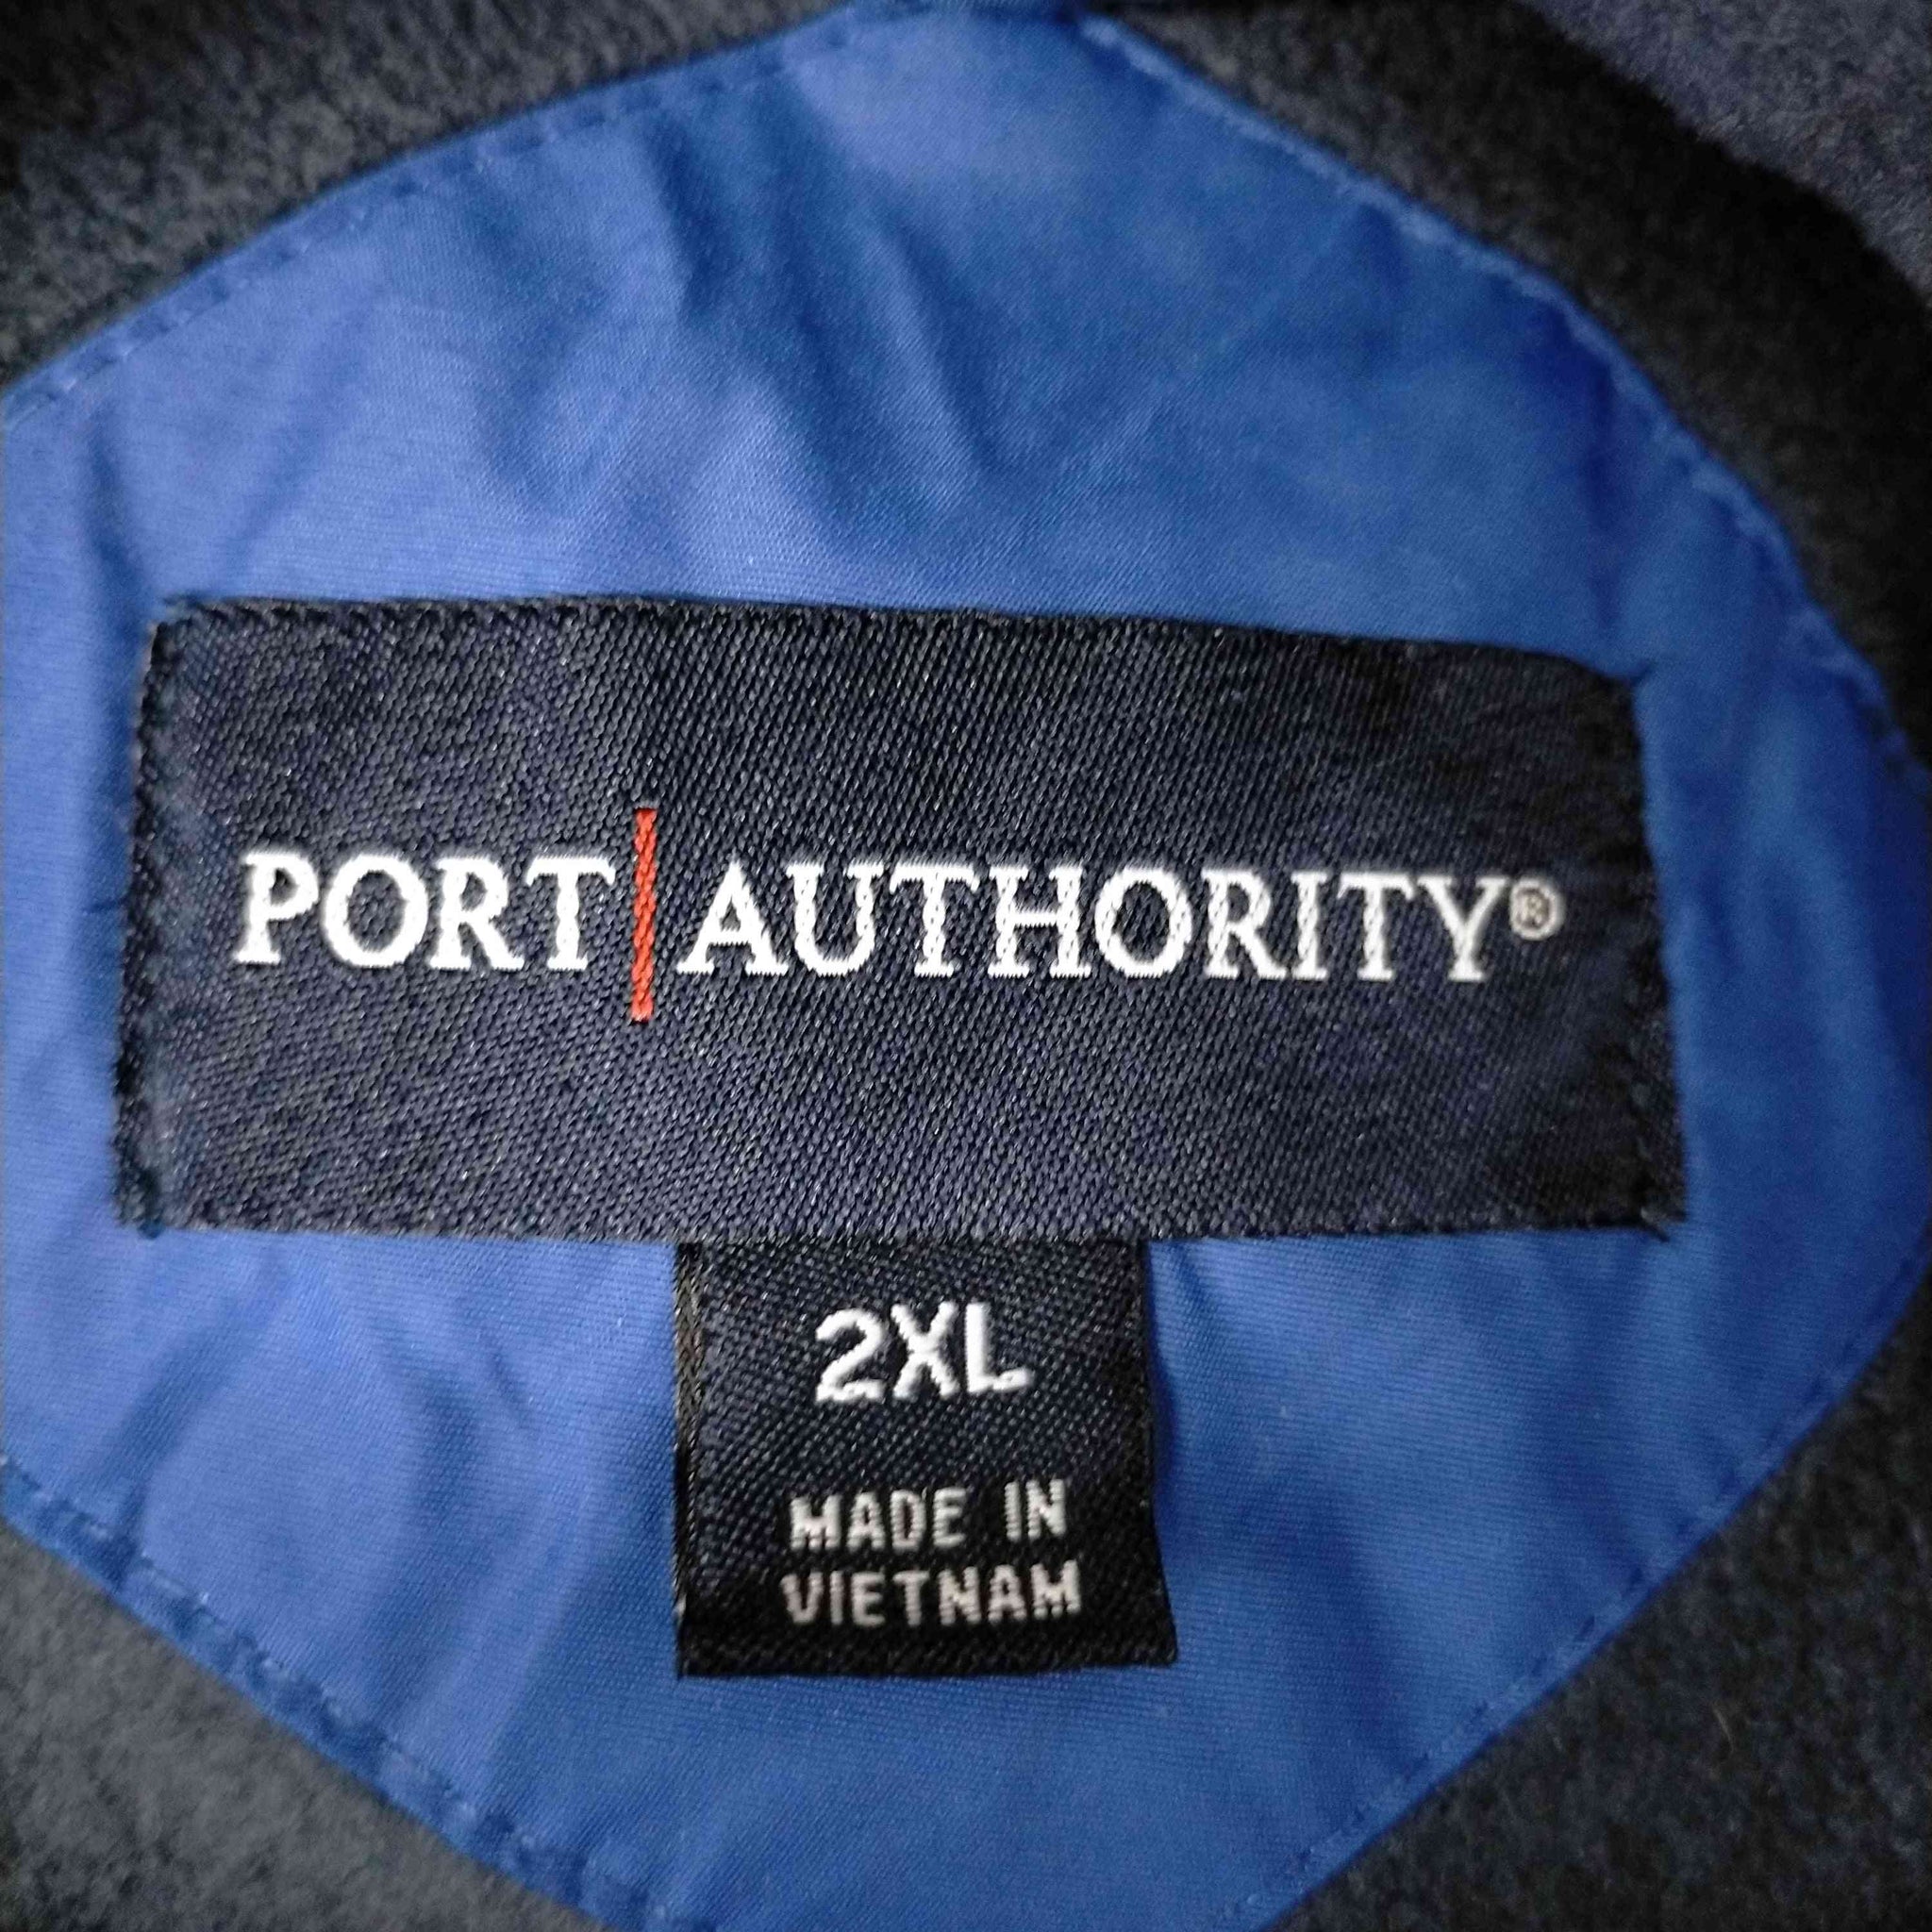 Port Authority(ポートオーソリティ)ナイロンブルゾン